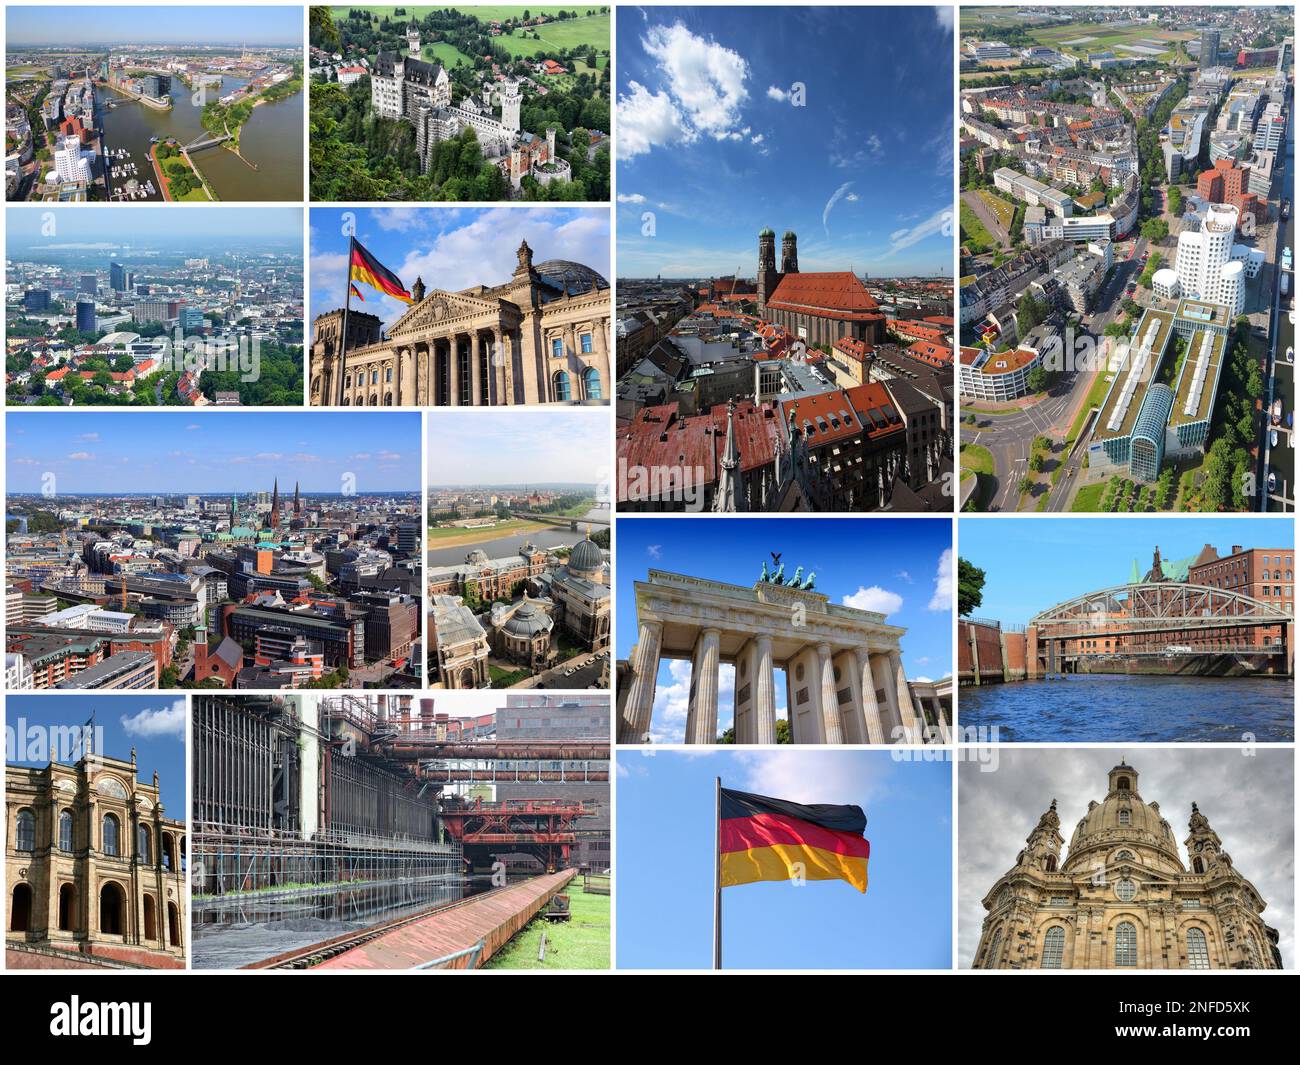 Germany tourism attractions - travel photo collage with Berlin, Munich, Hamburg, Dresden, Dusseldorf, Dortmund and Essen. Stock Photo